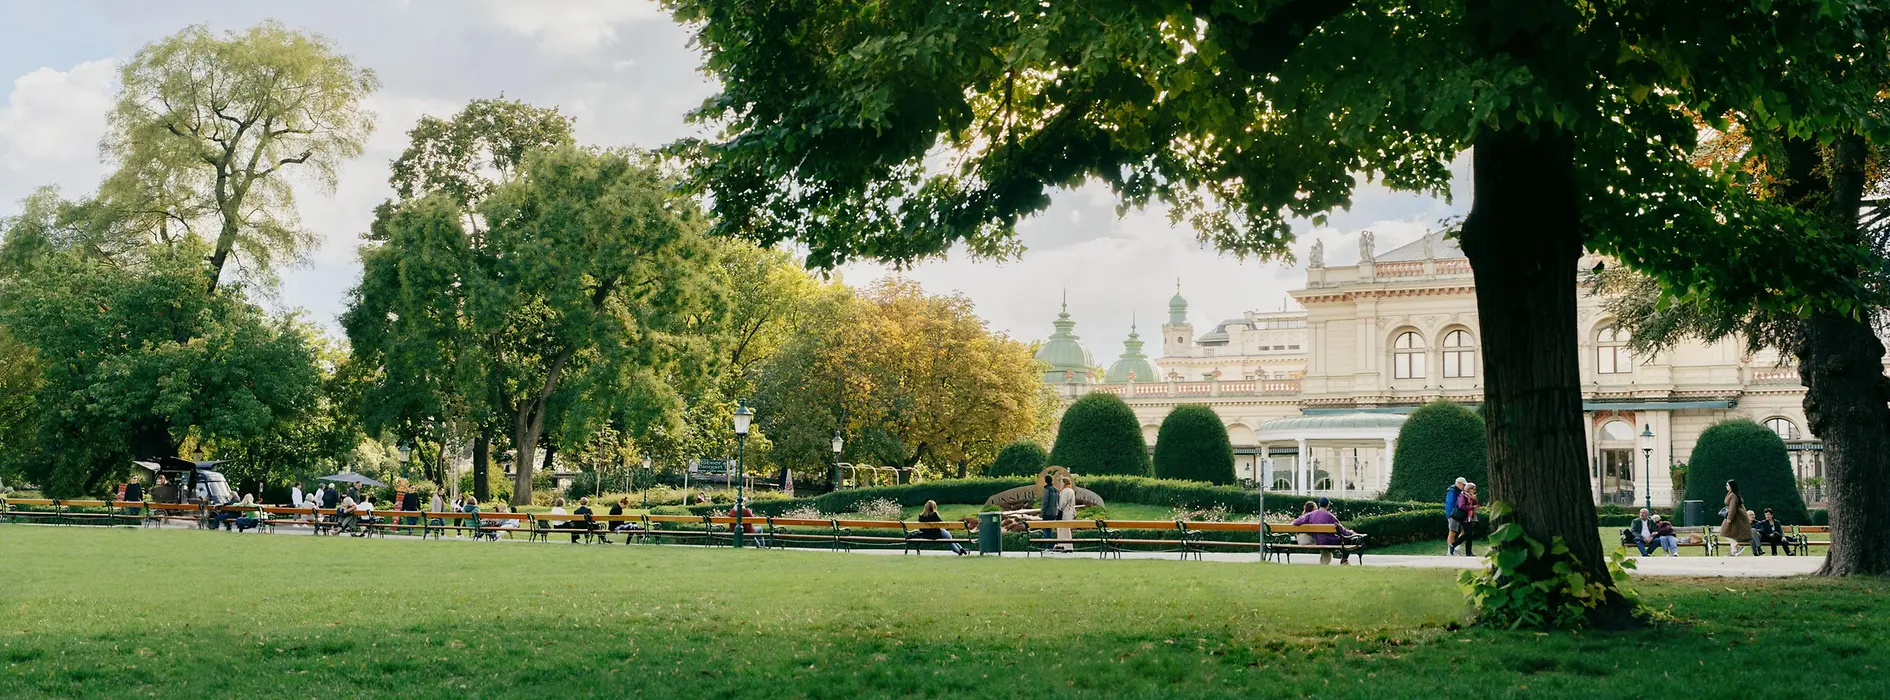 Parcul oraşului Viena